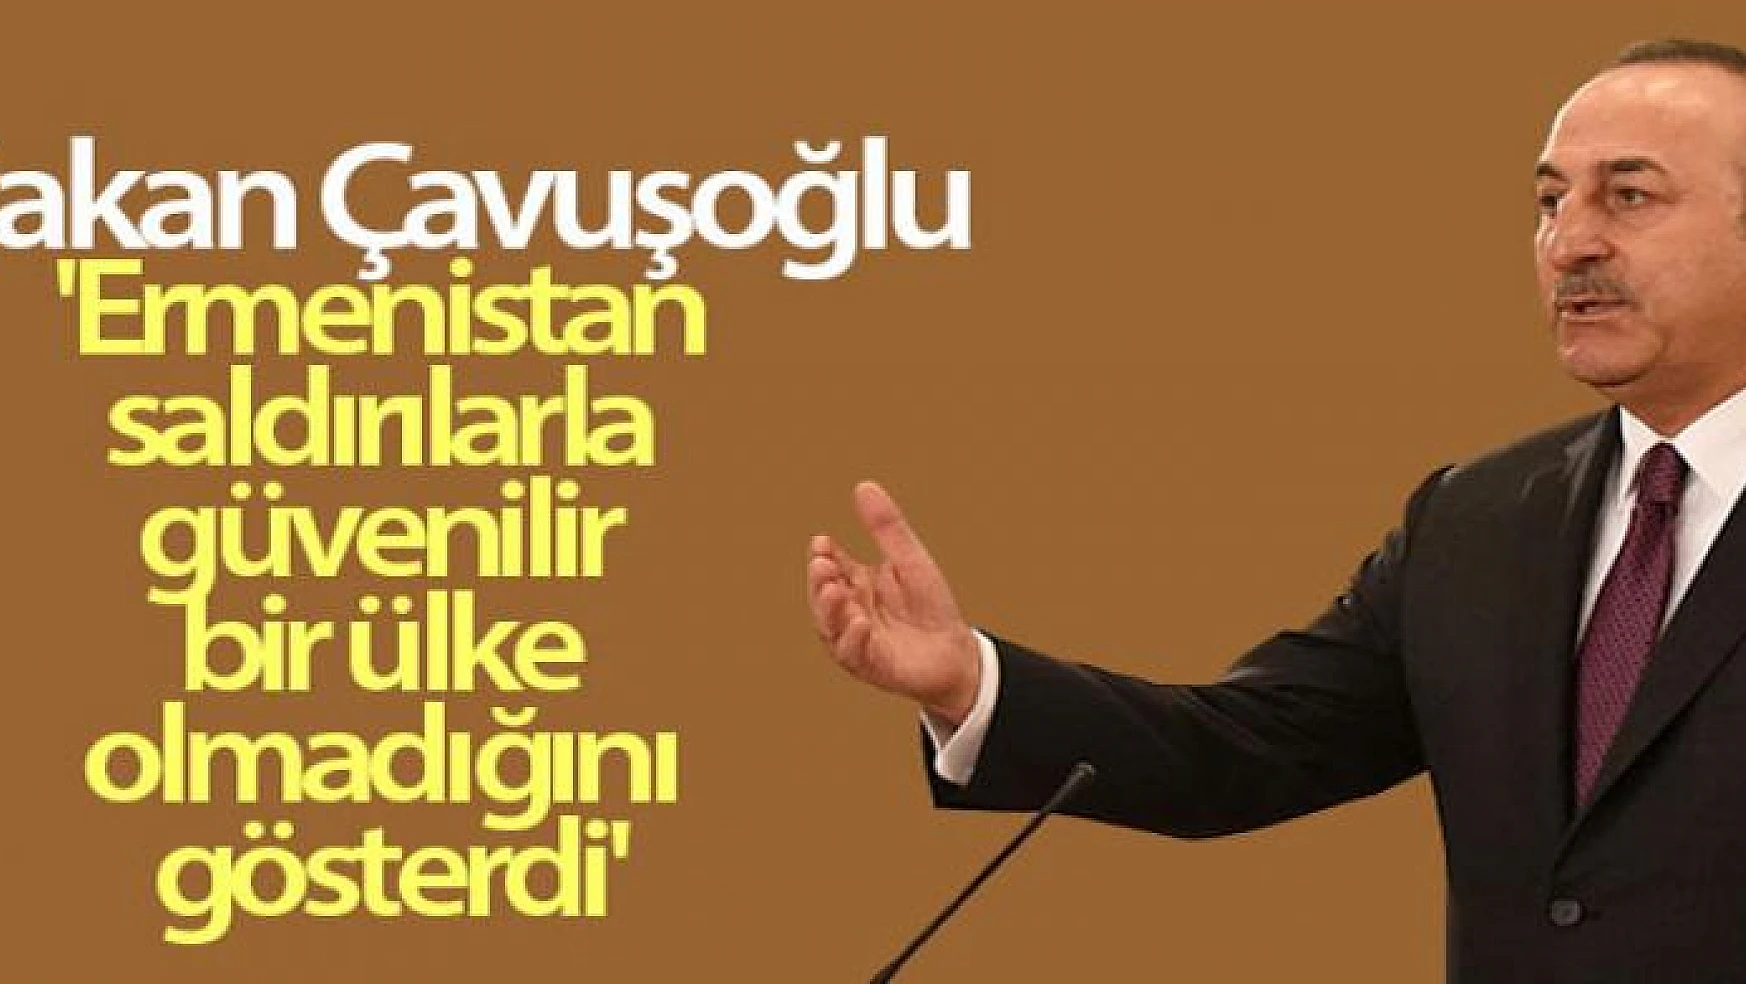 Bakan Çavuşoğlu: 'Ermenistan saldırılarla güvenilir bir ülke olmadığını gösterdi'